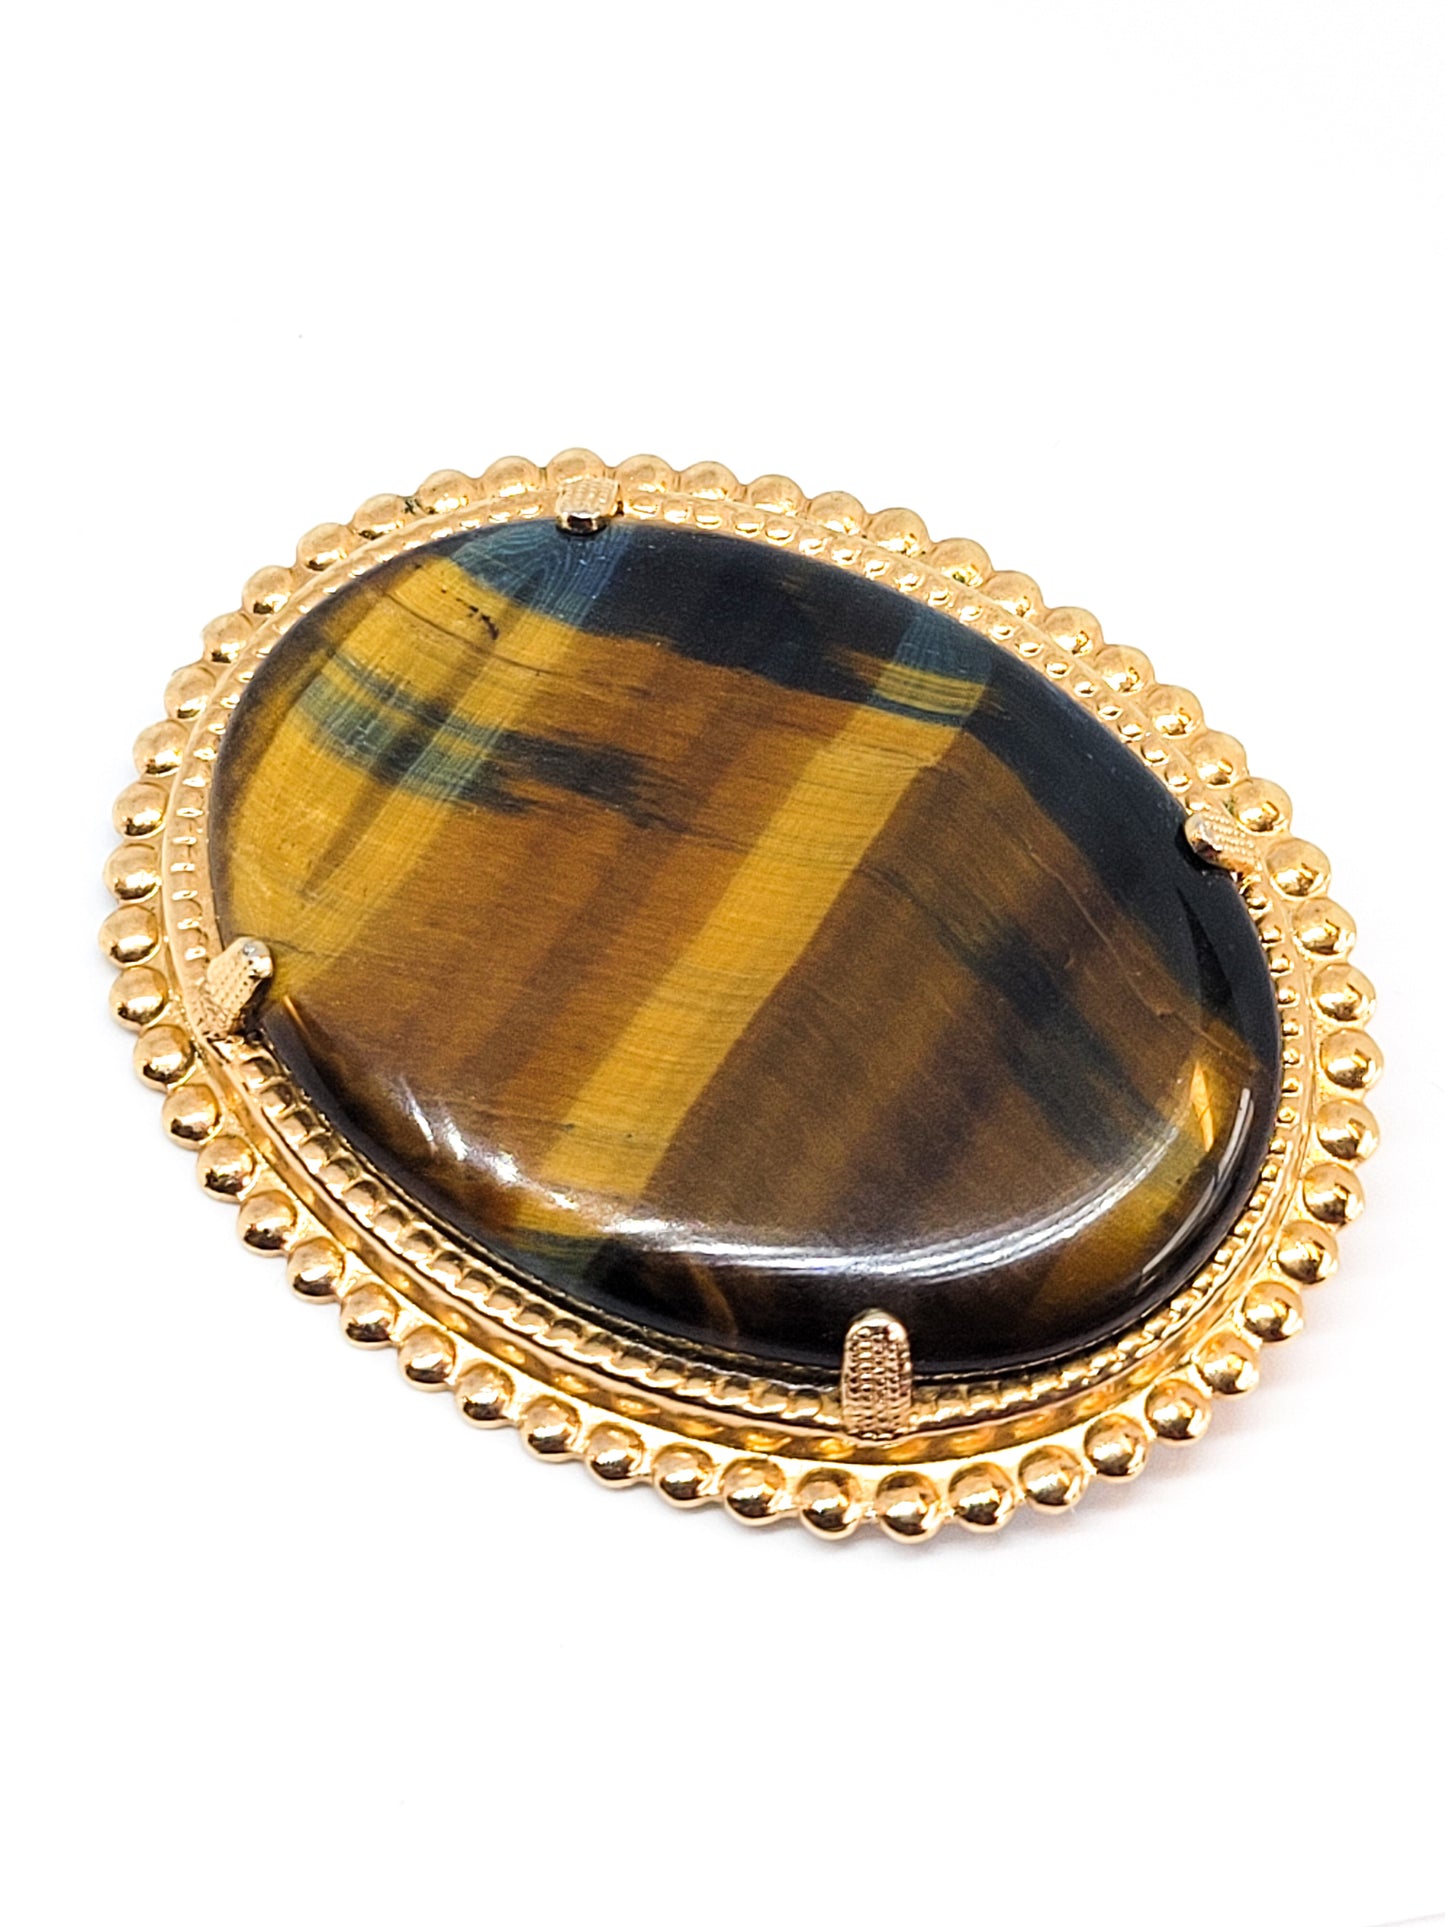 Large banded tiger's eye vintage gold toned gemstone brooch pin